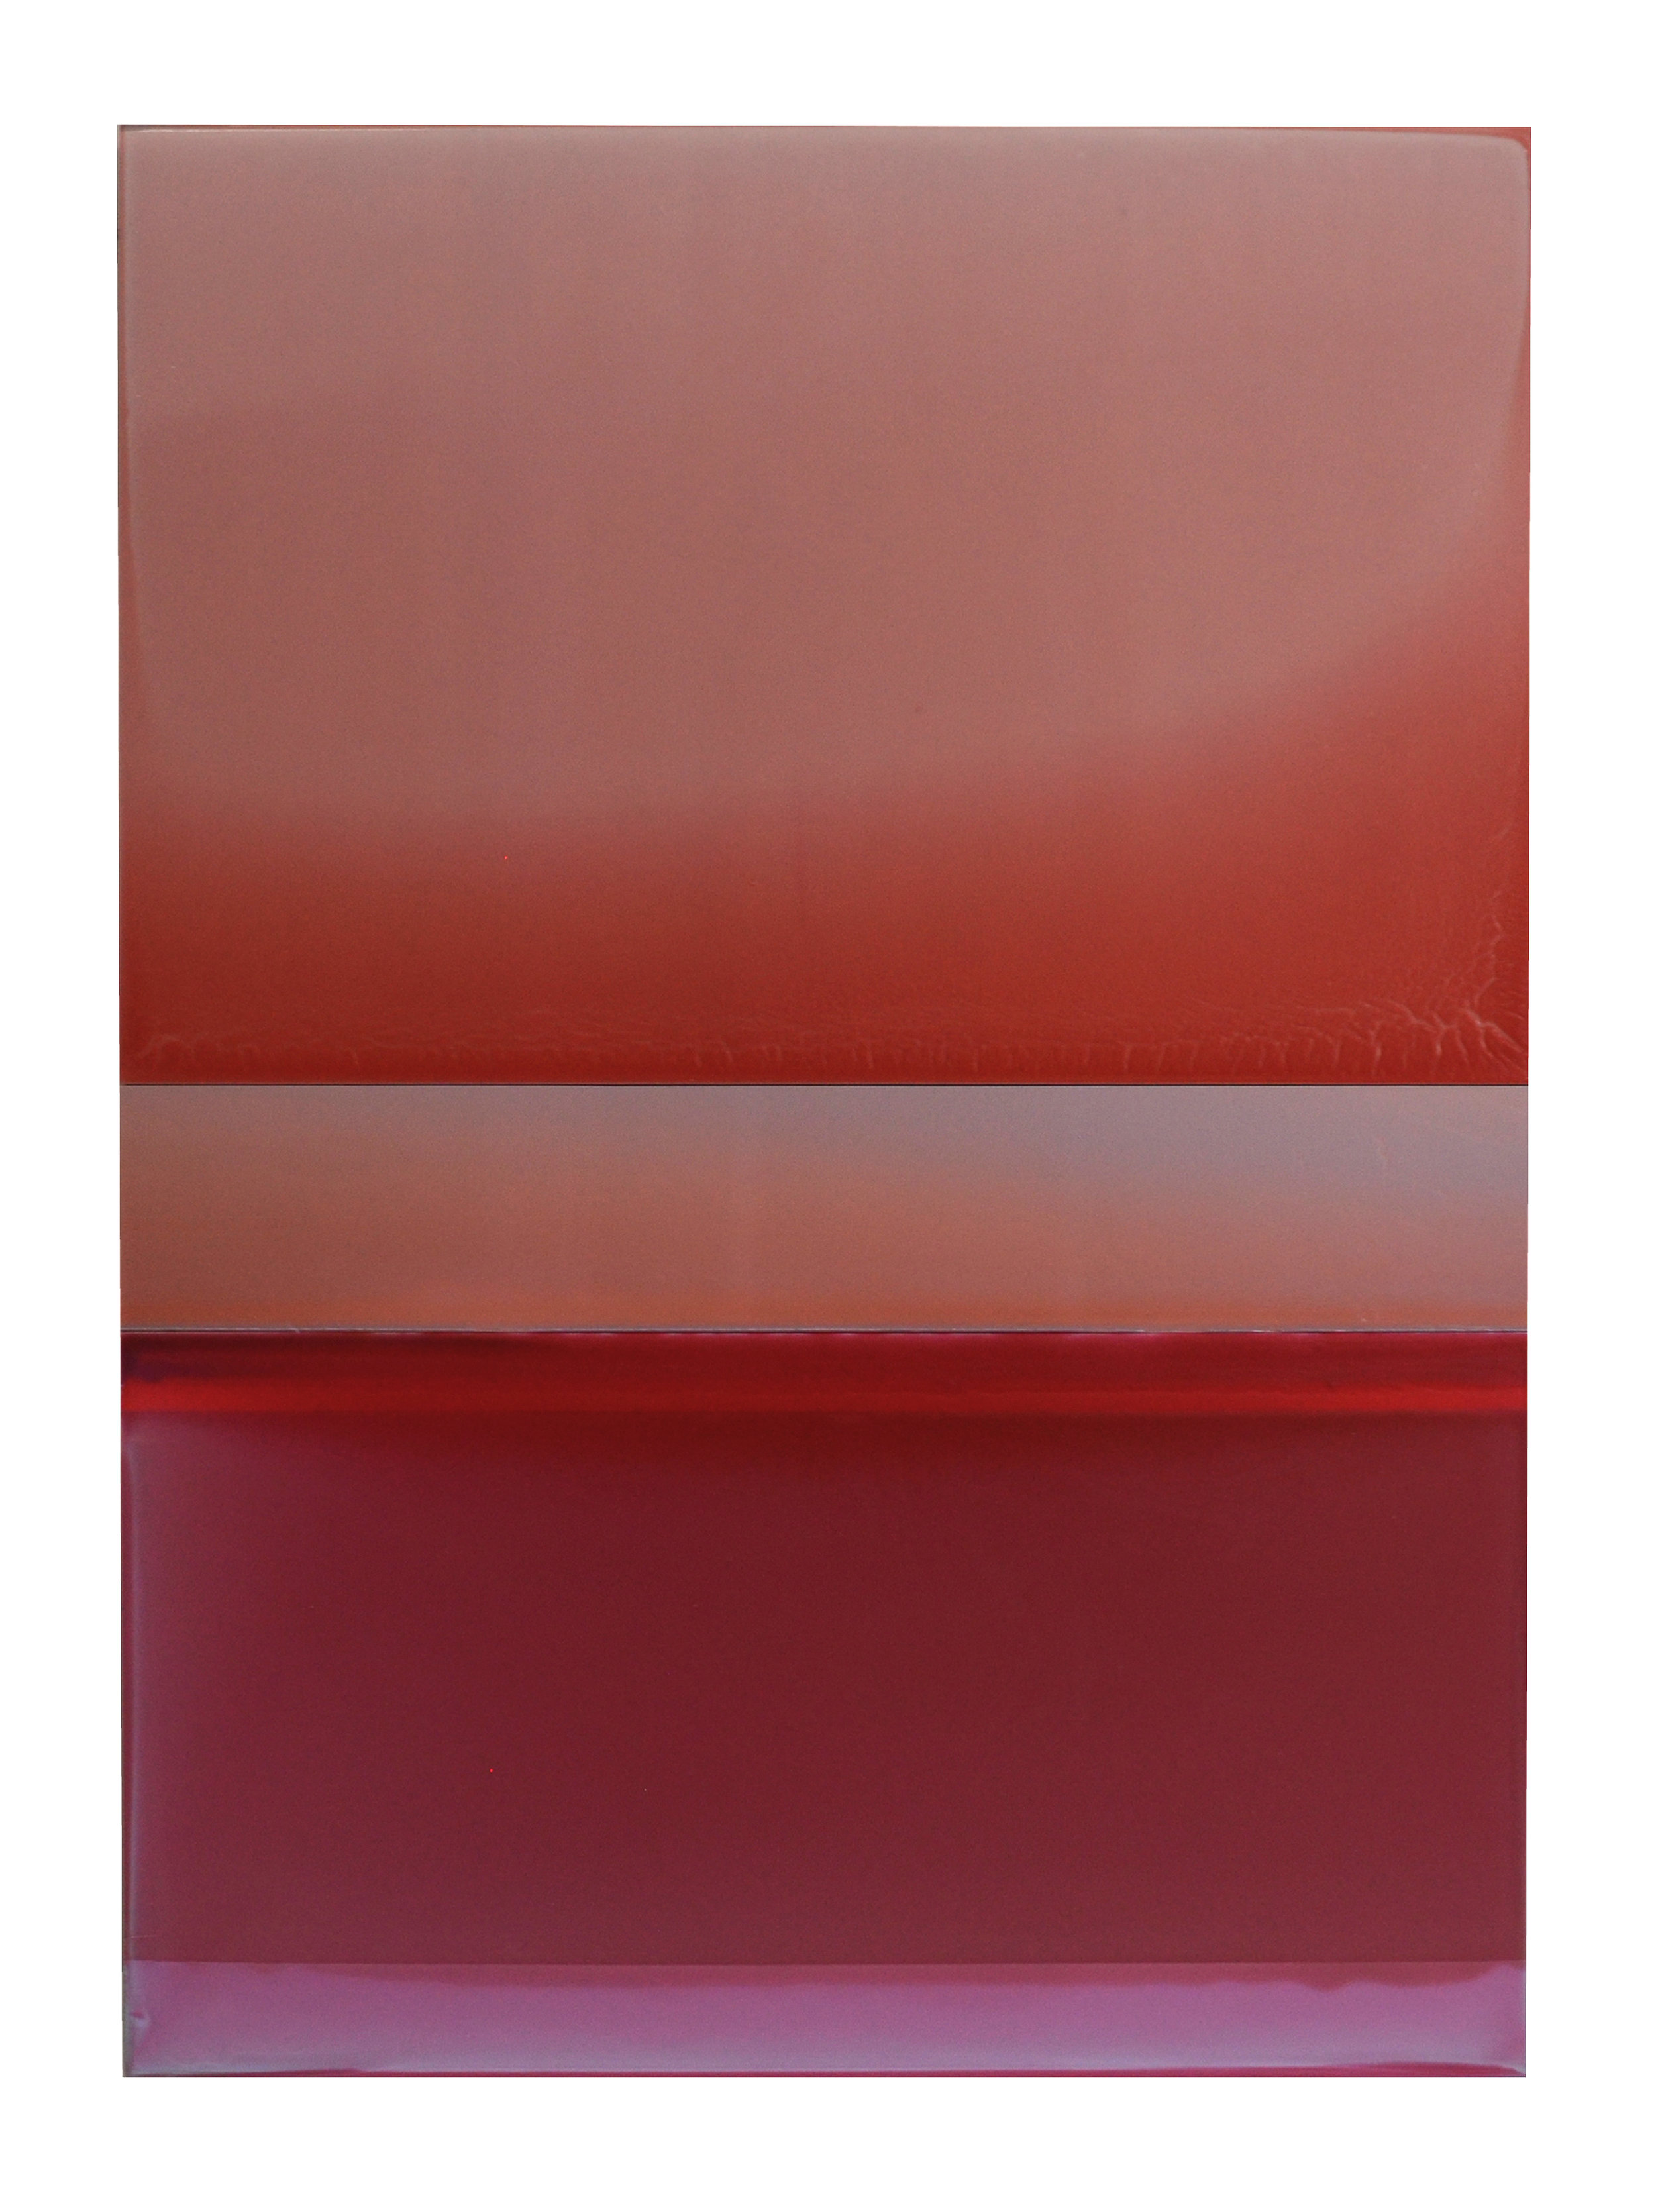 NYFA10_Kermes and Cochineal_2017_33x24_tinted polymer on panel.jpeg